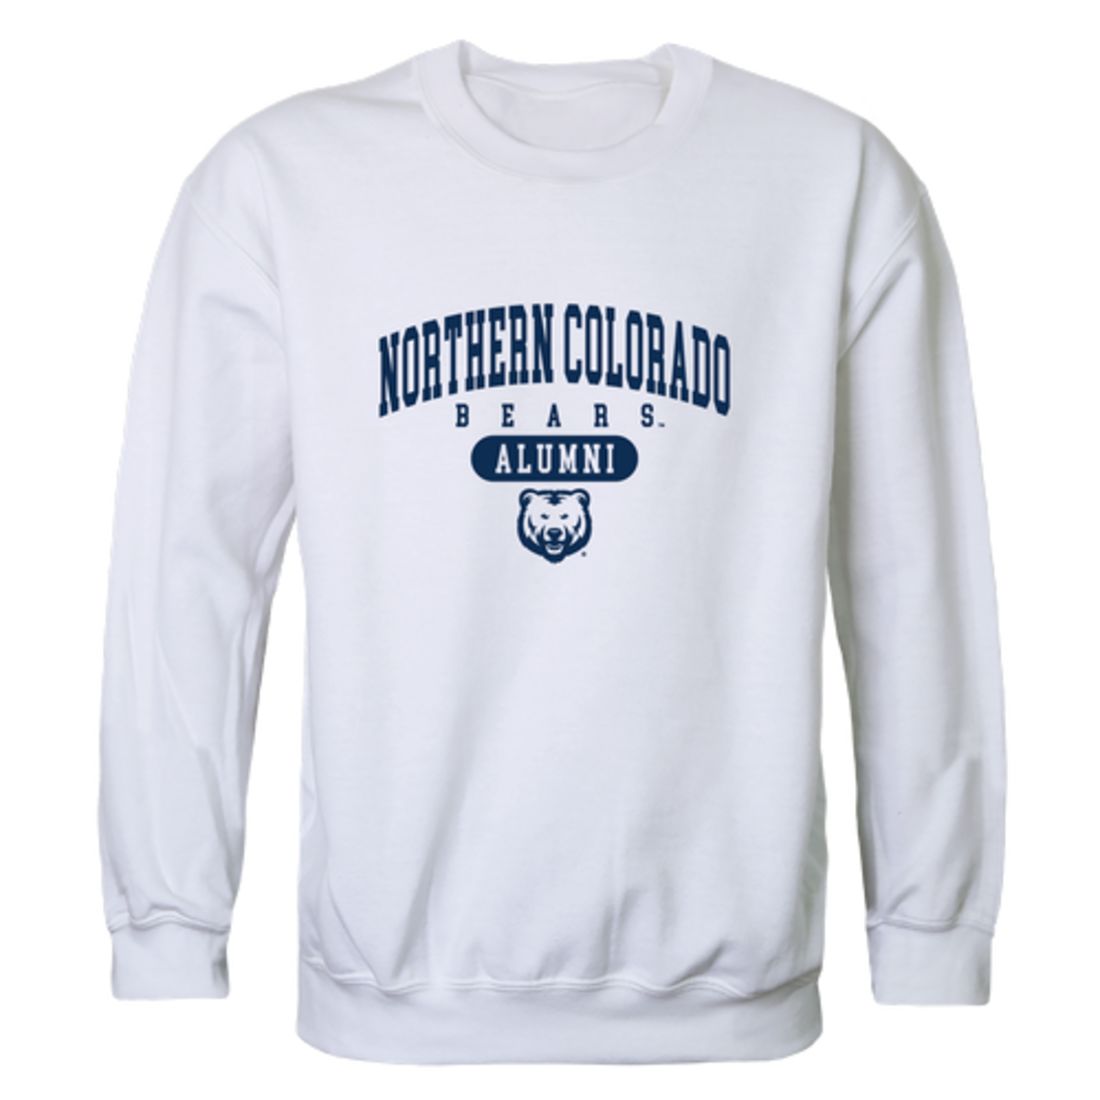 University of Northern Colorado Bears Alumni Fleece Crewneck Pullover Sweatshirt Heather Gray-Campus-Wardrobe